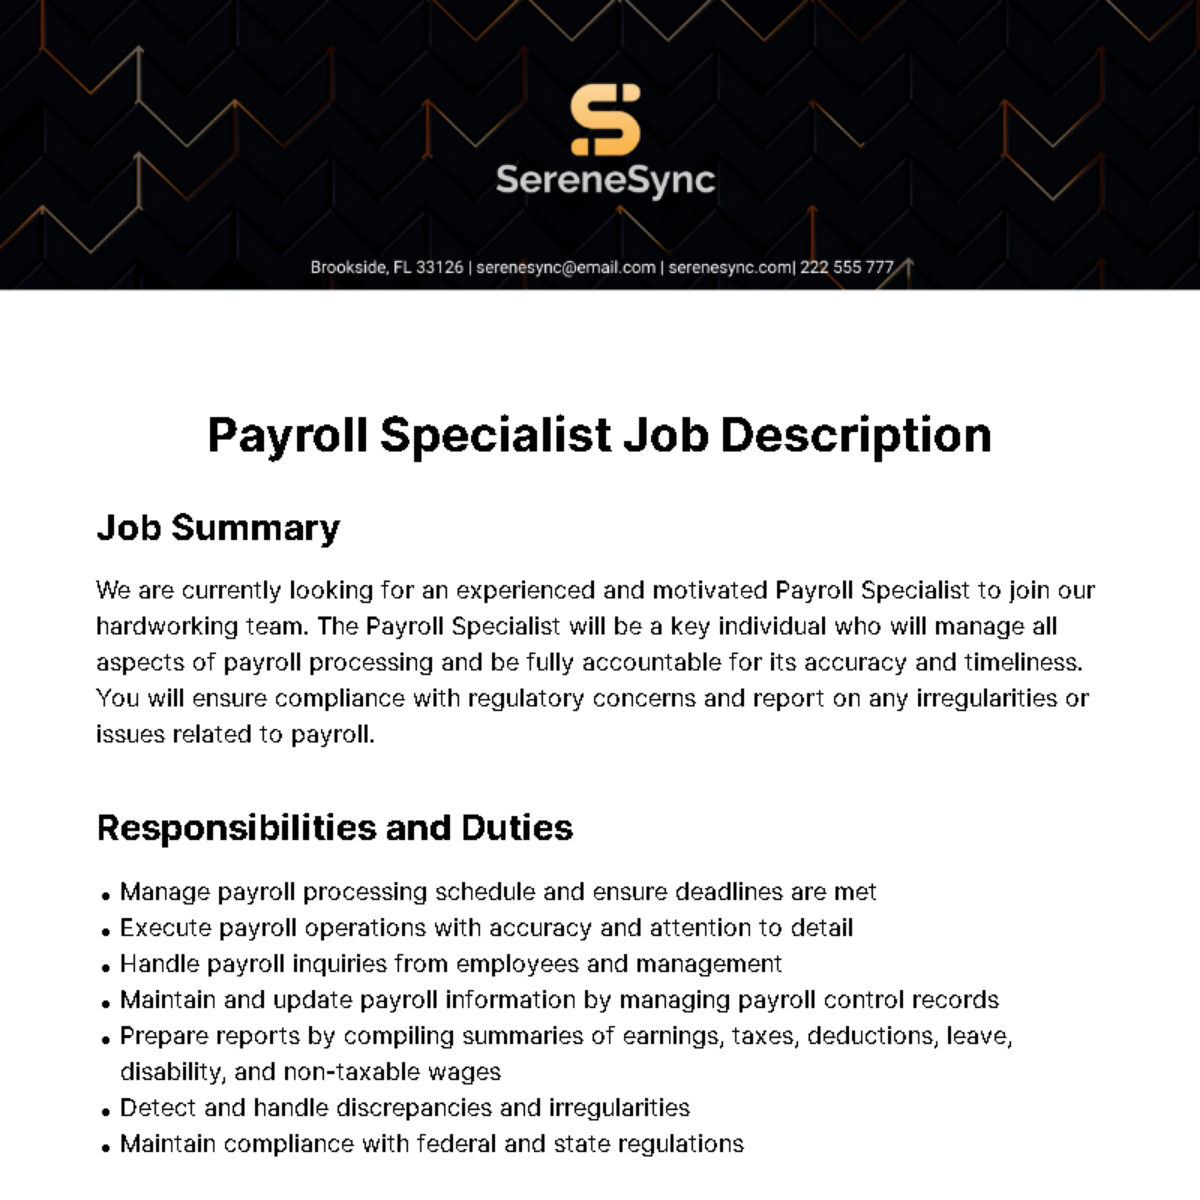 Payroll Specialist Job Description Template